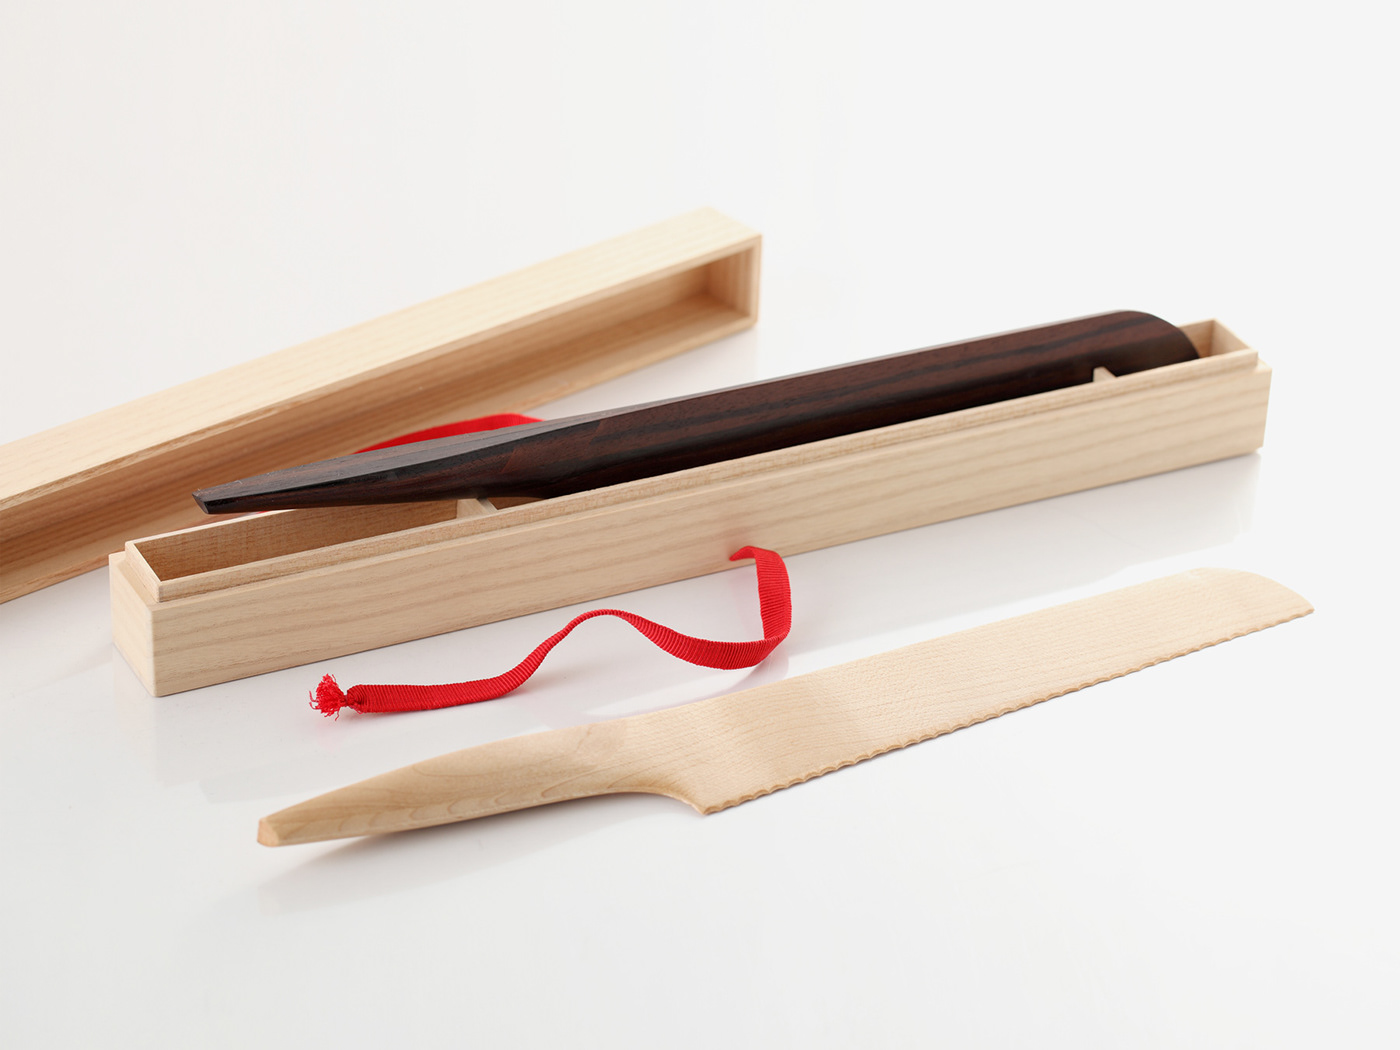 wood wooden knife japan kyoto andrea ponti product design Hong Kong fusion minimal